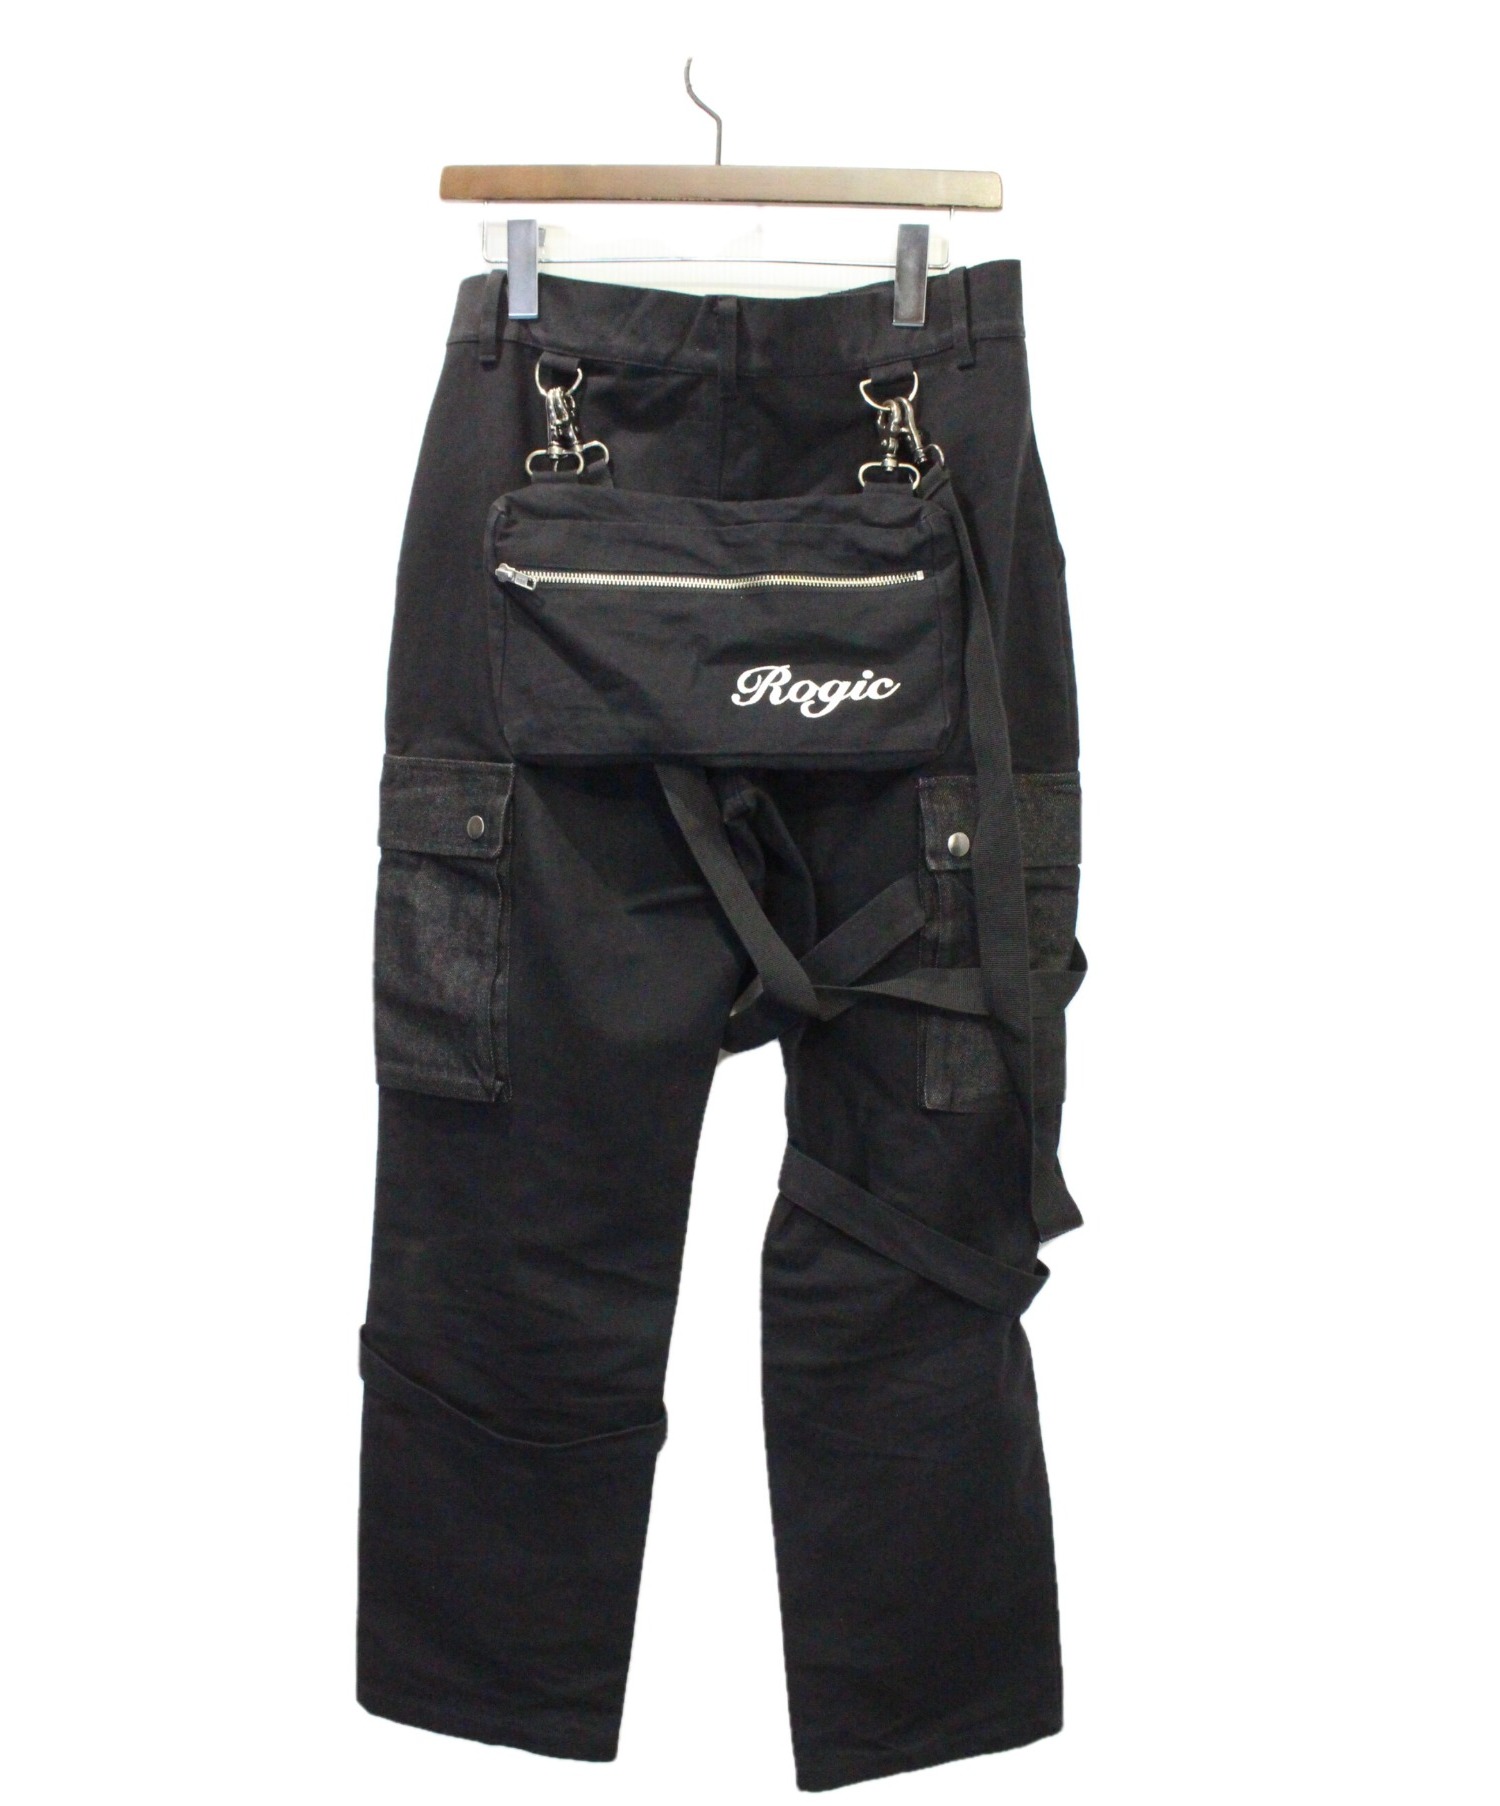 ワークパンツ/カーゴパンツROGIC Military Pants Black - ワークパンツ